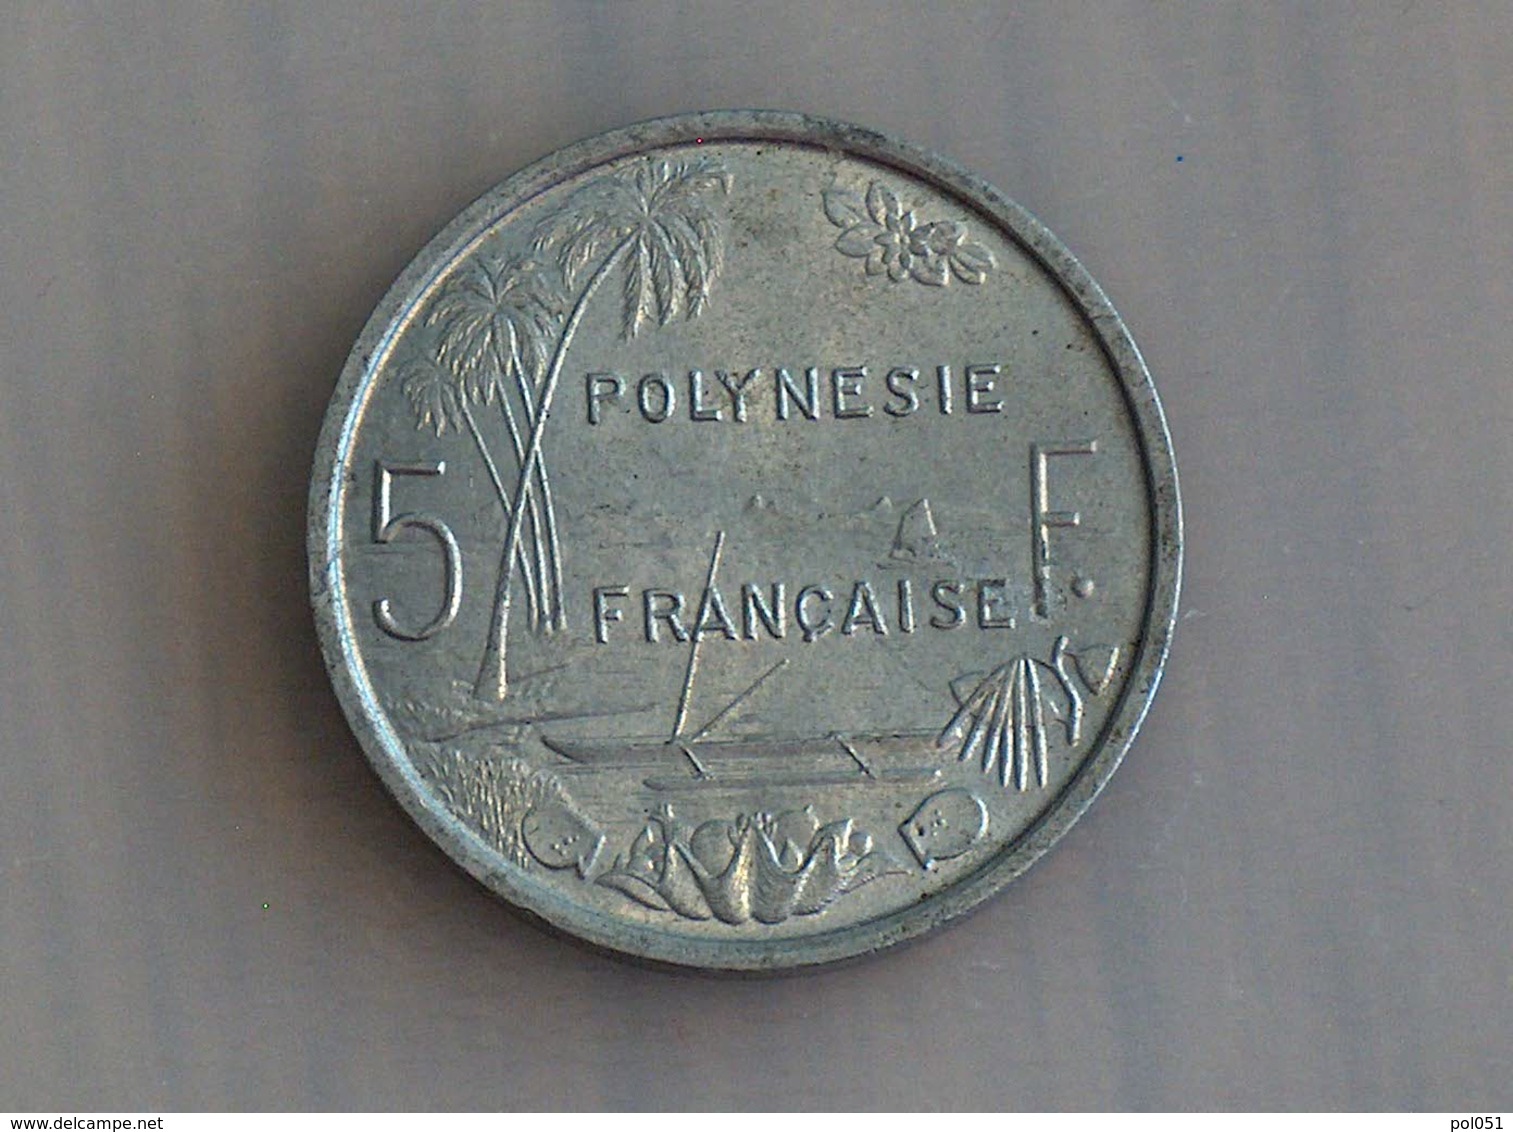 Polynesie Française 5 Francs 1965 - Polynésie Française